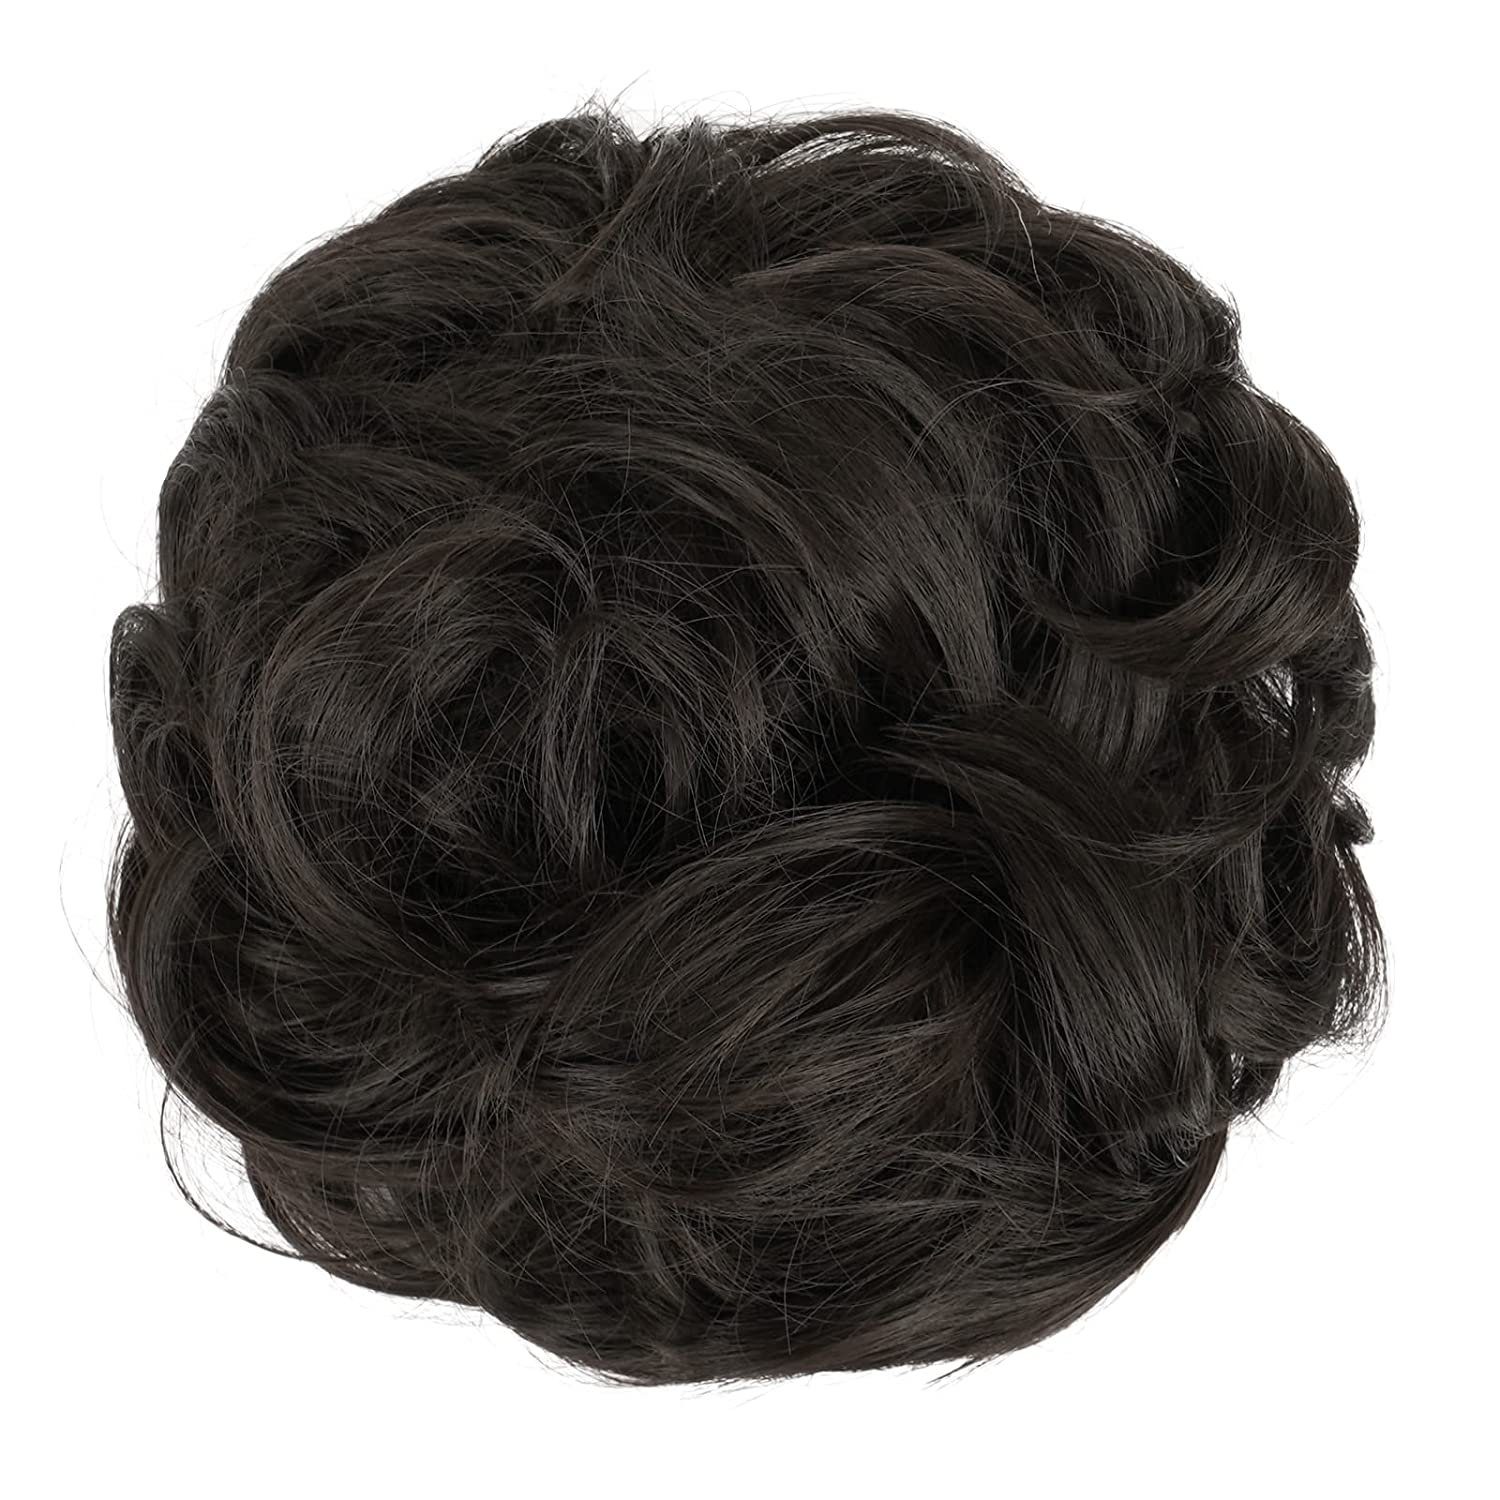 SCHUTA Kunsthaar-Extension Haarteil Haargummi Braun Dunkelstes Frauen,Haarverlängerung für Hochsteckfrisuren